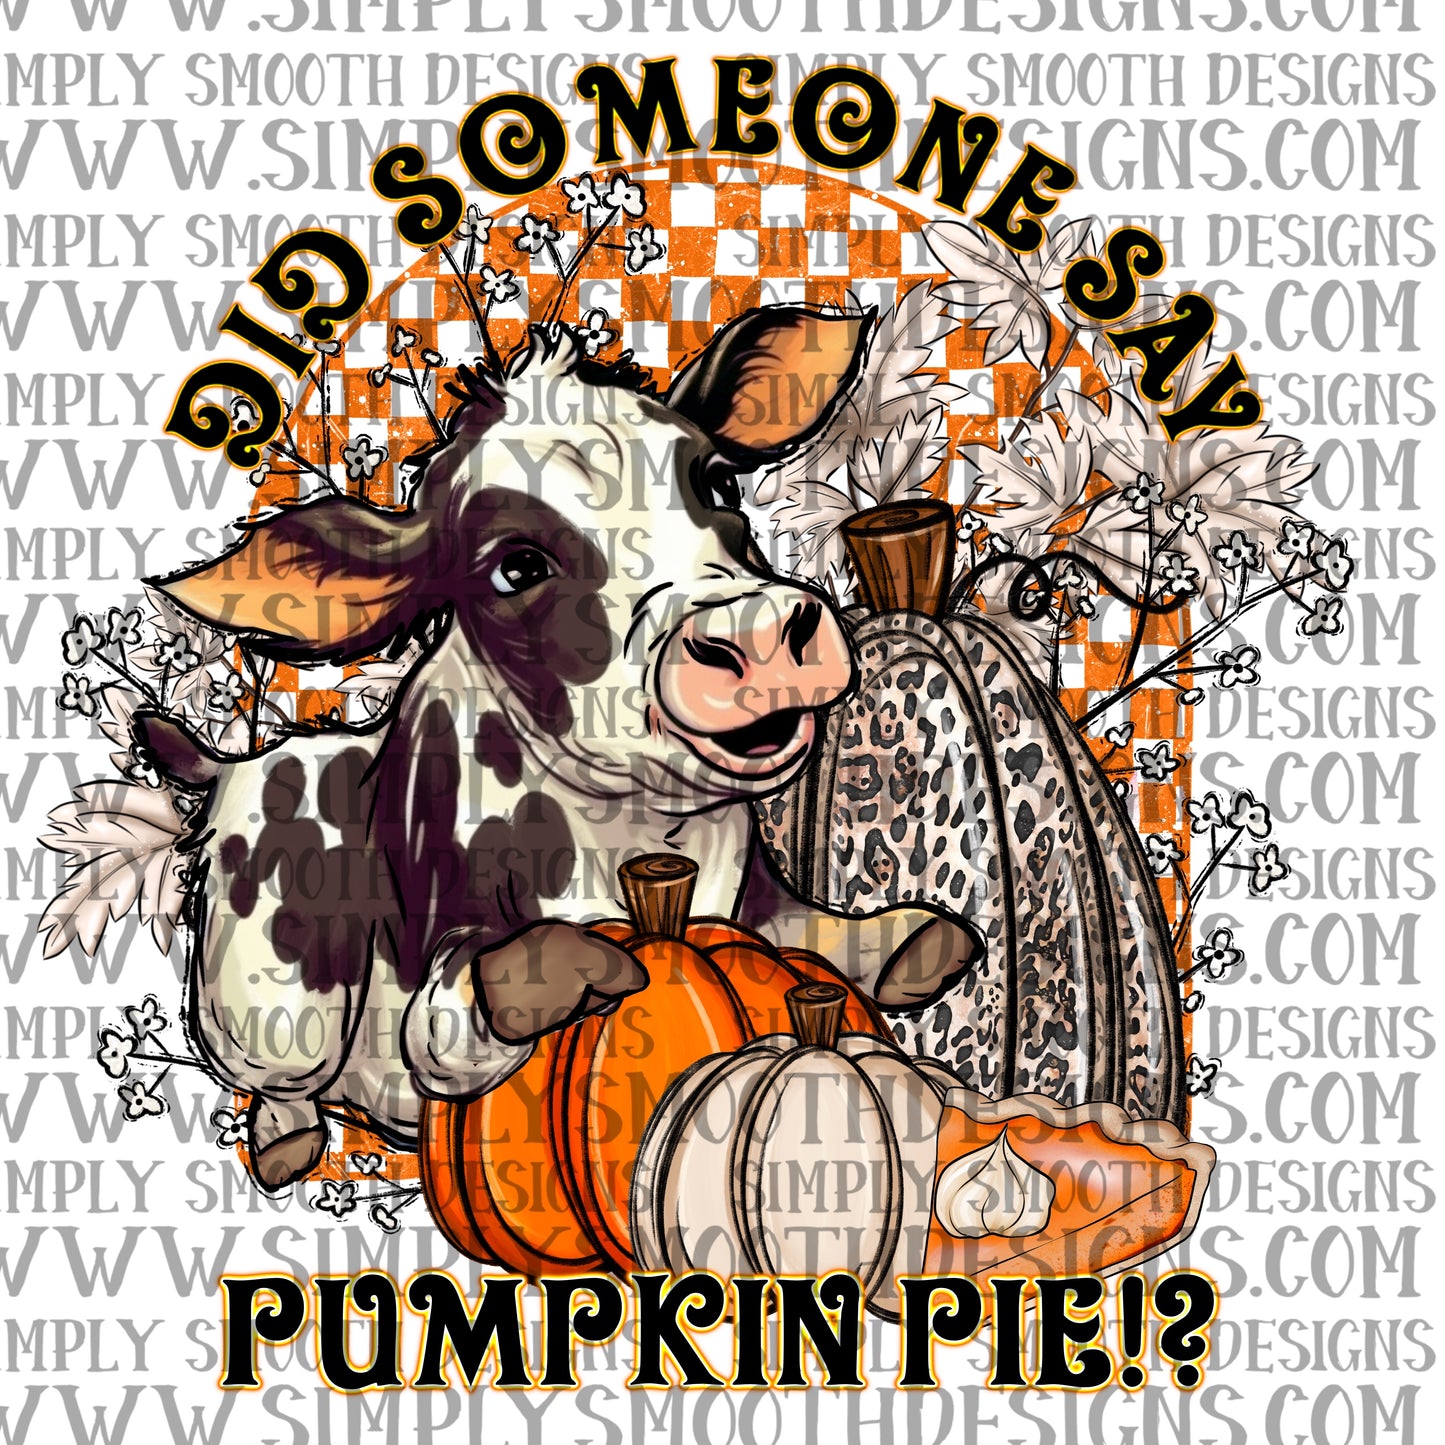 Pumpkin pie cow